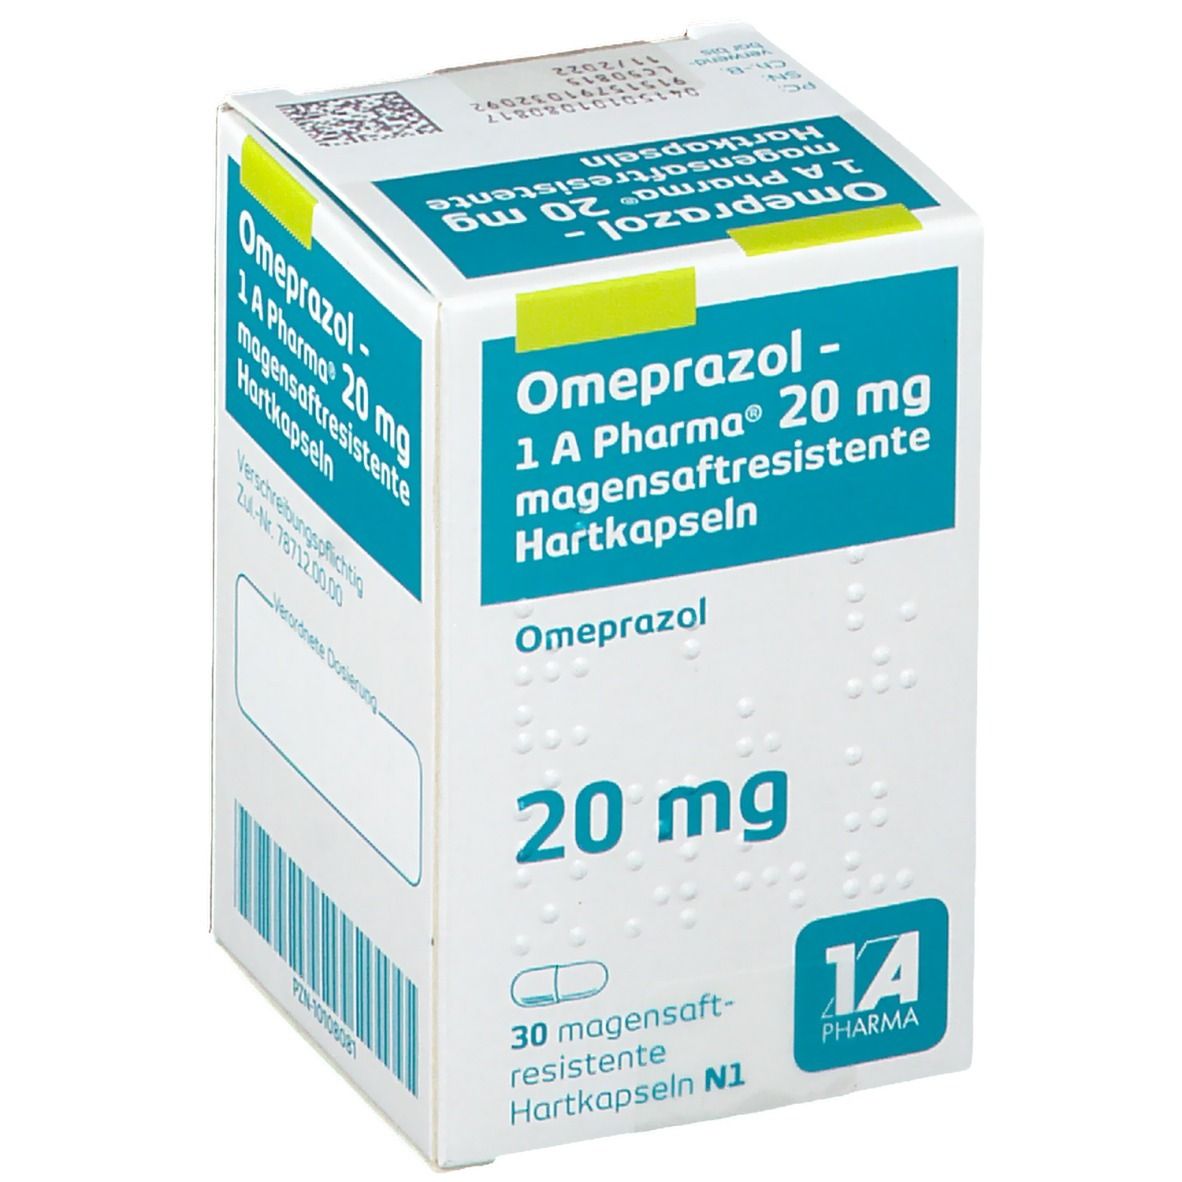 Omeprazol 1 A Pharma 20Mg